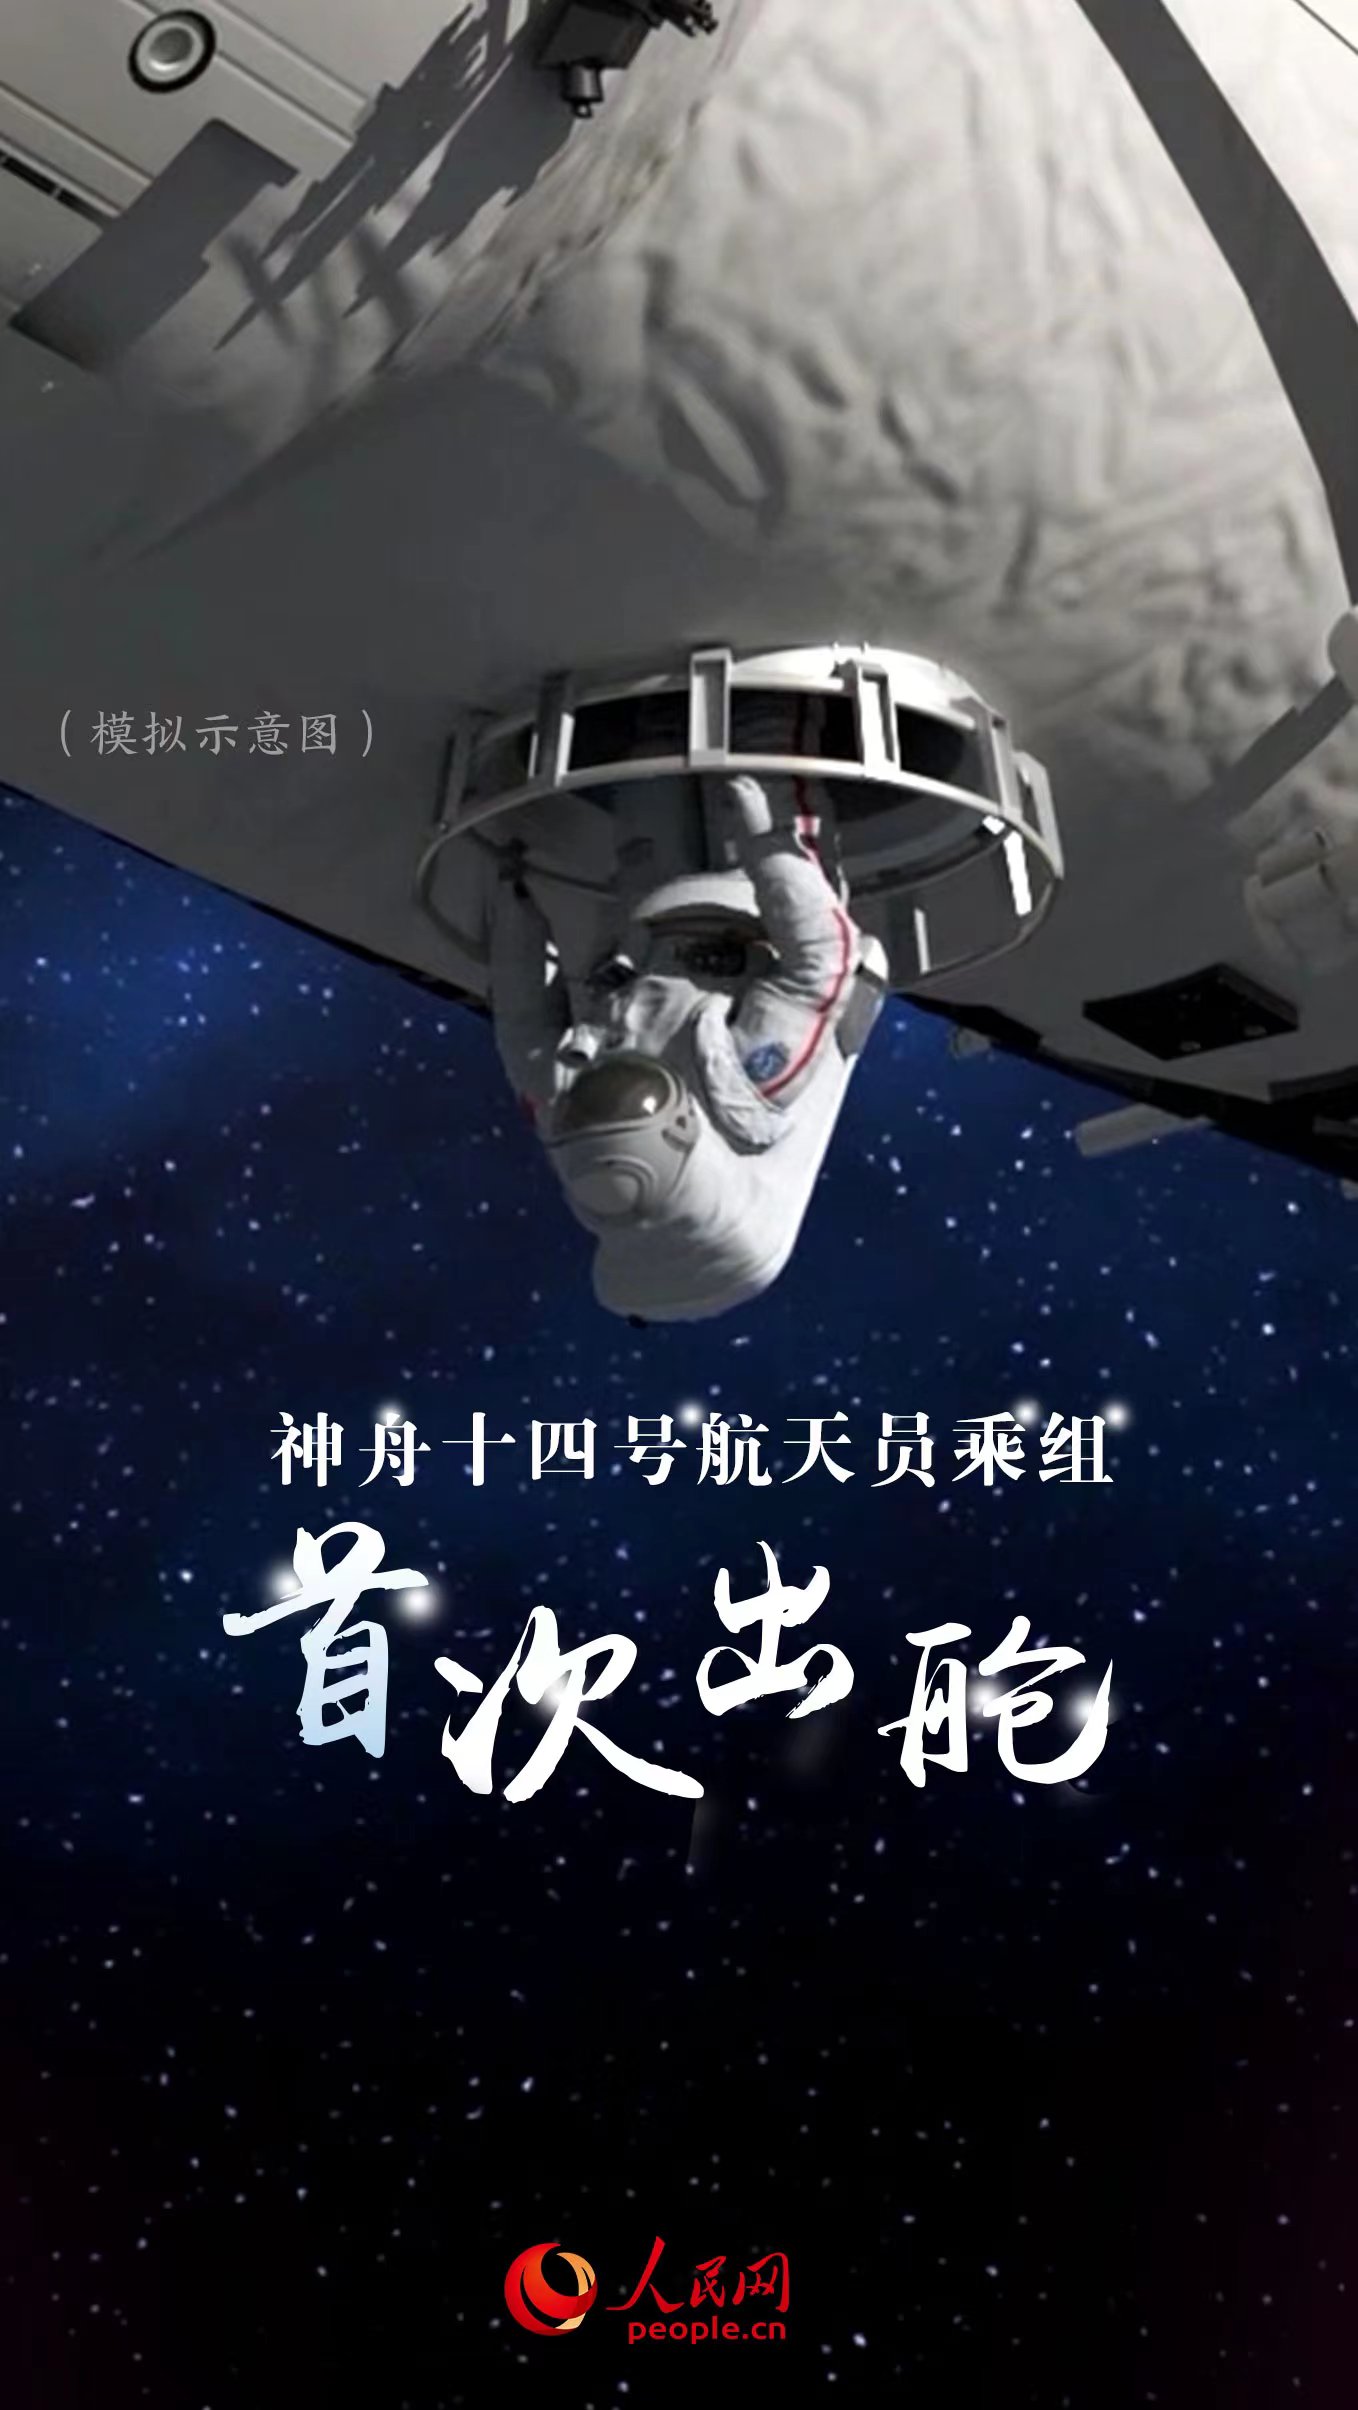 中国太空人完成首次在轨交接 神舟十四号3人周日返地球 - 国际 - 即时国际